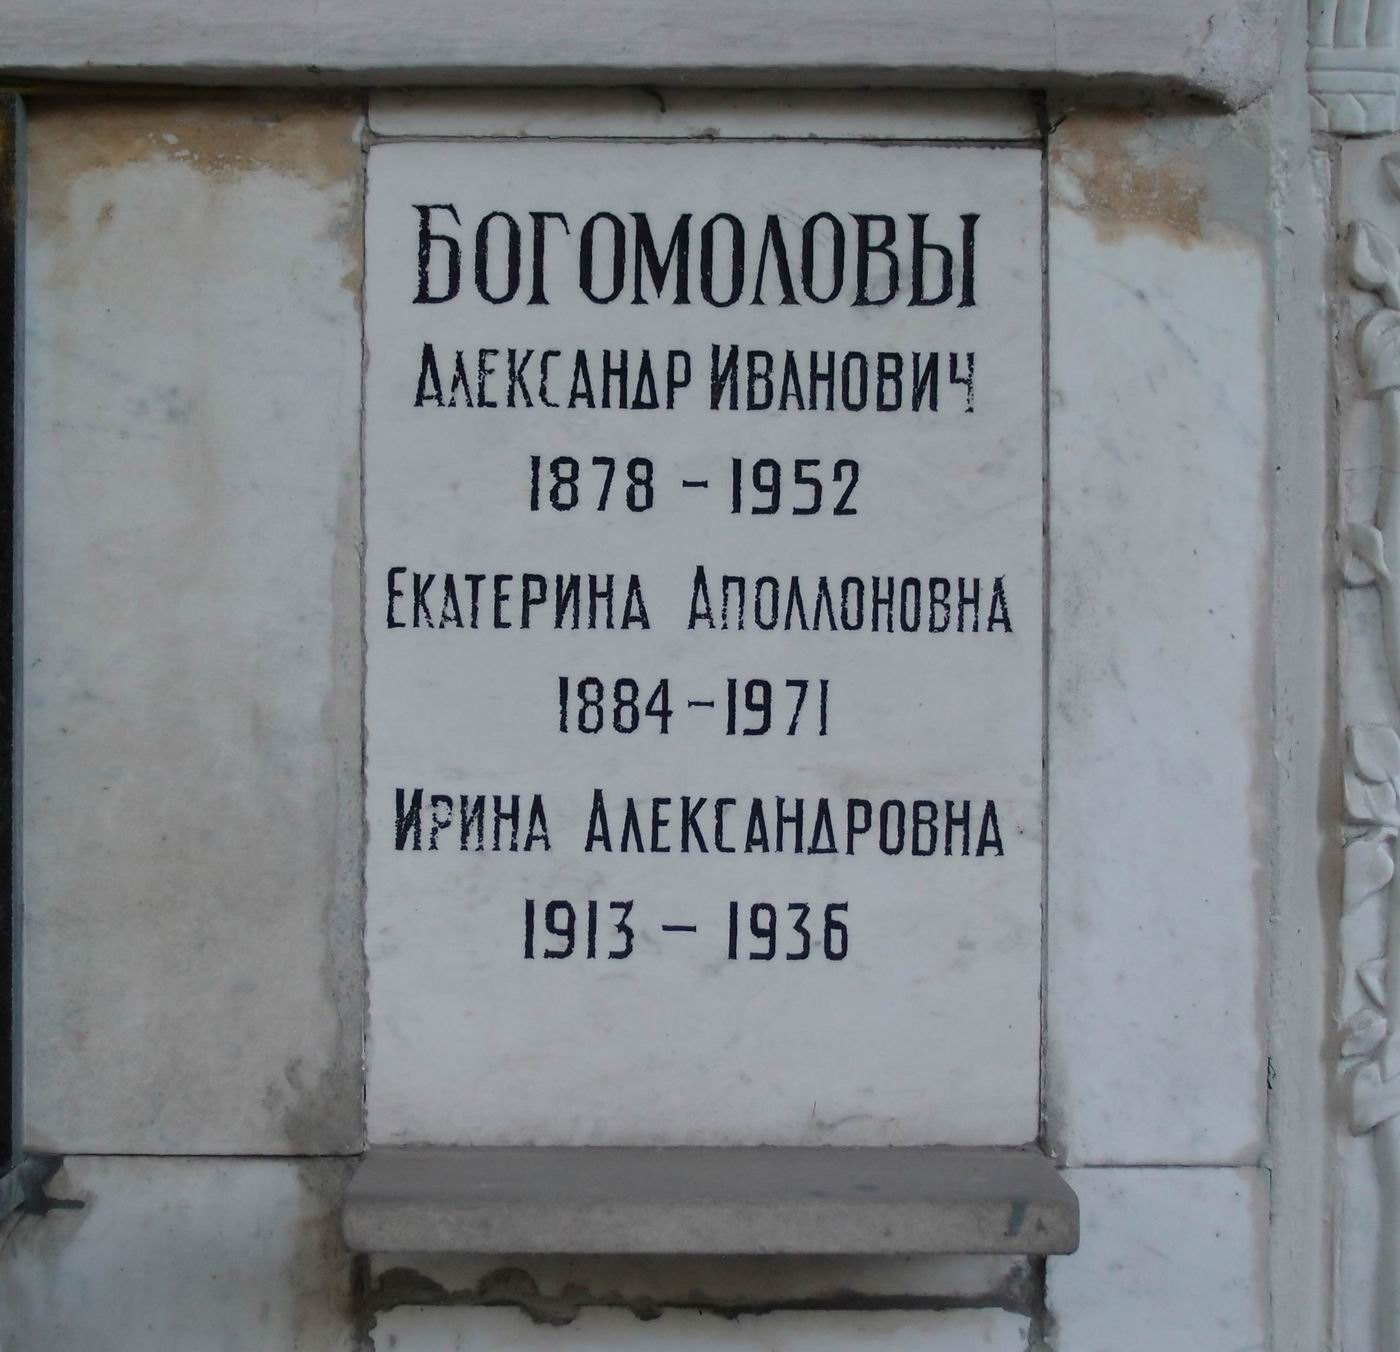 Плита на нише Богомолова А.И. (1878-1952), на Новодевичьем кладбище (колумбарий [80]-5-1).